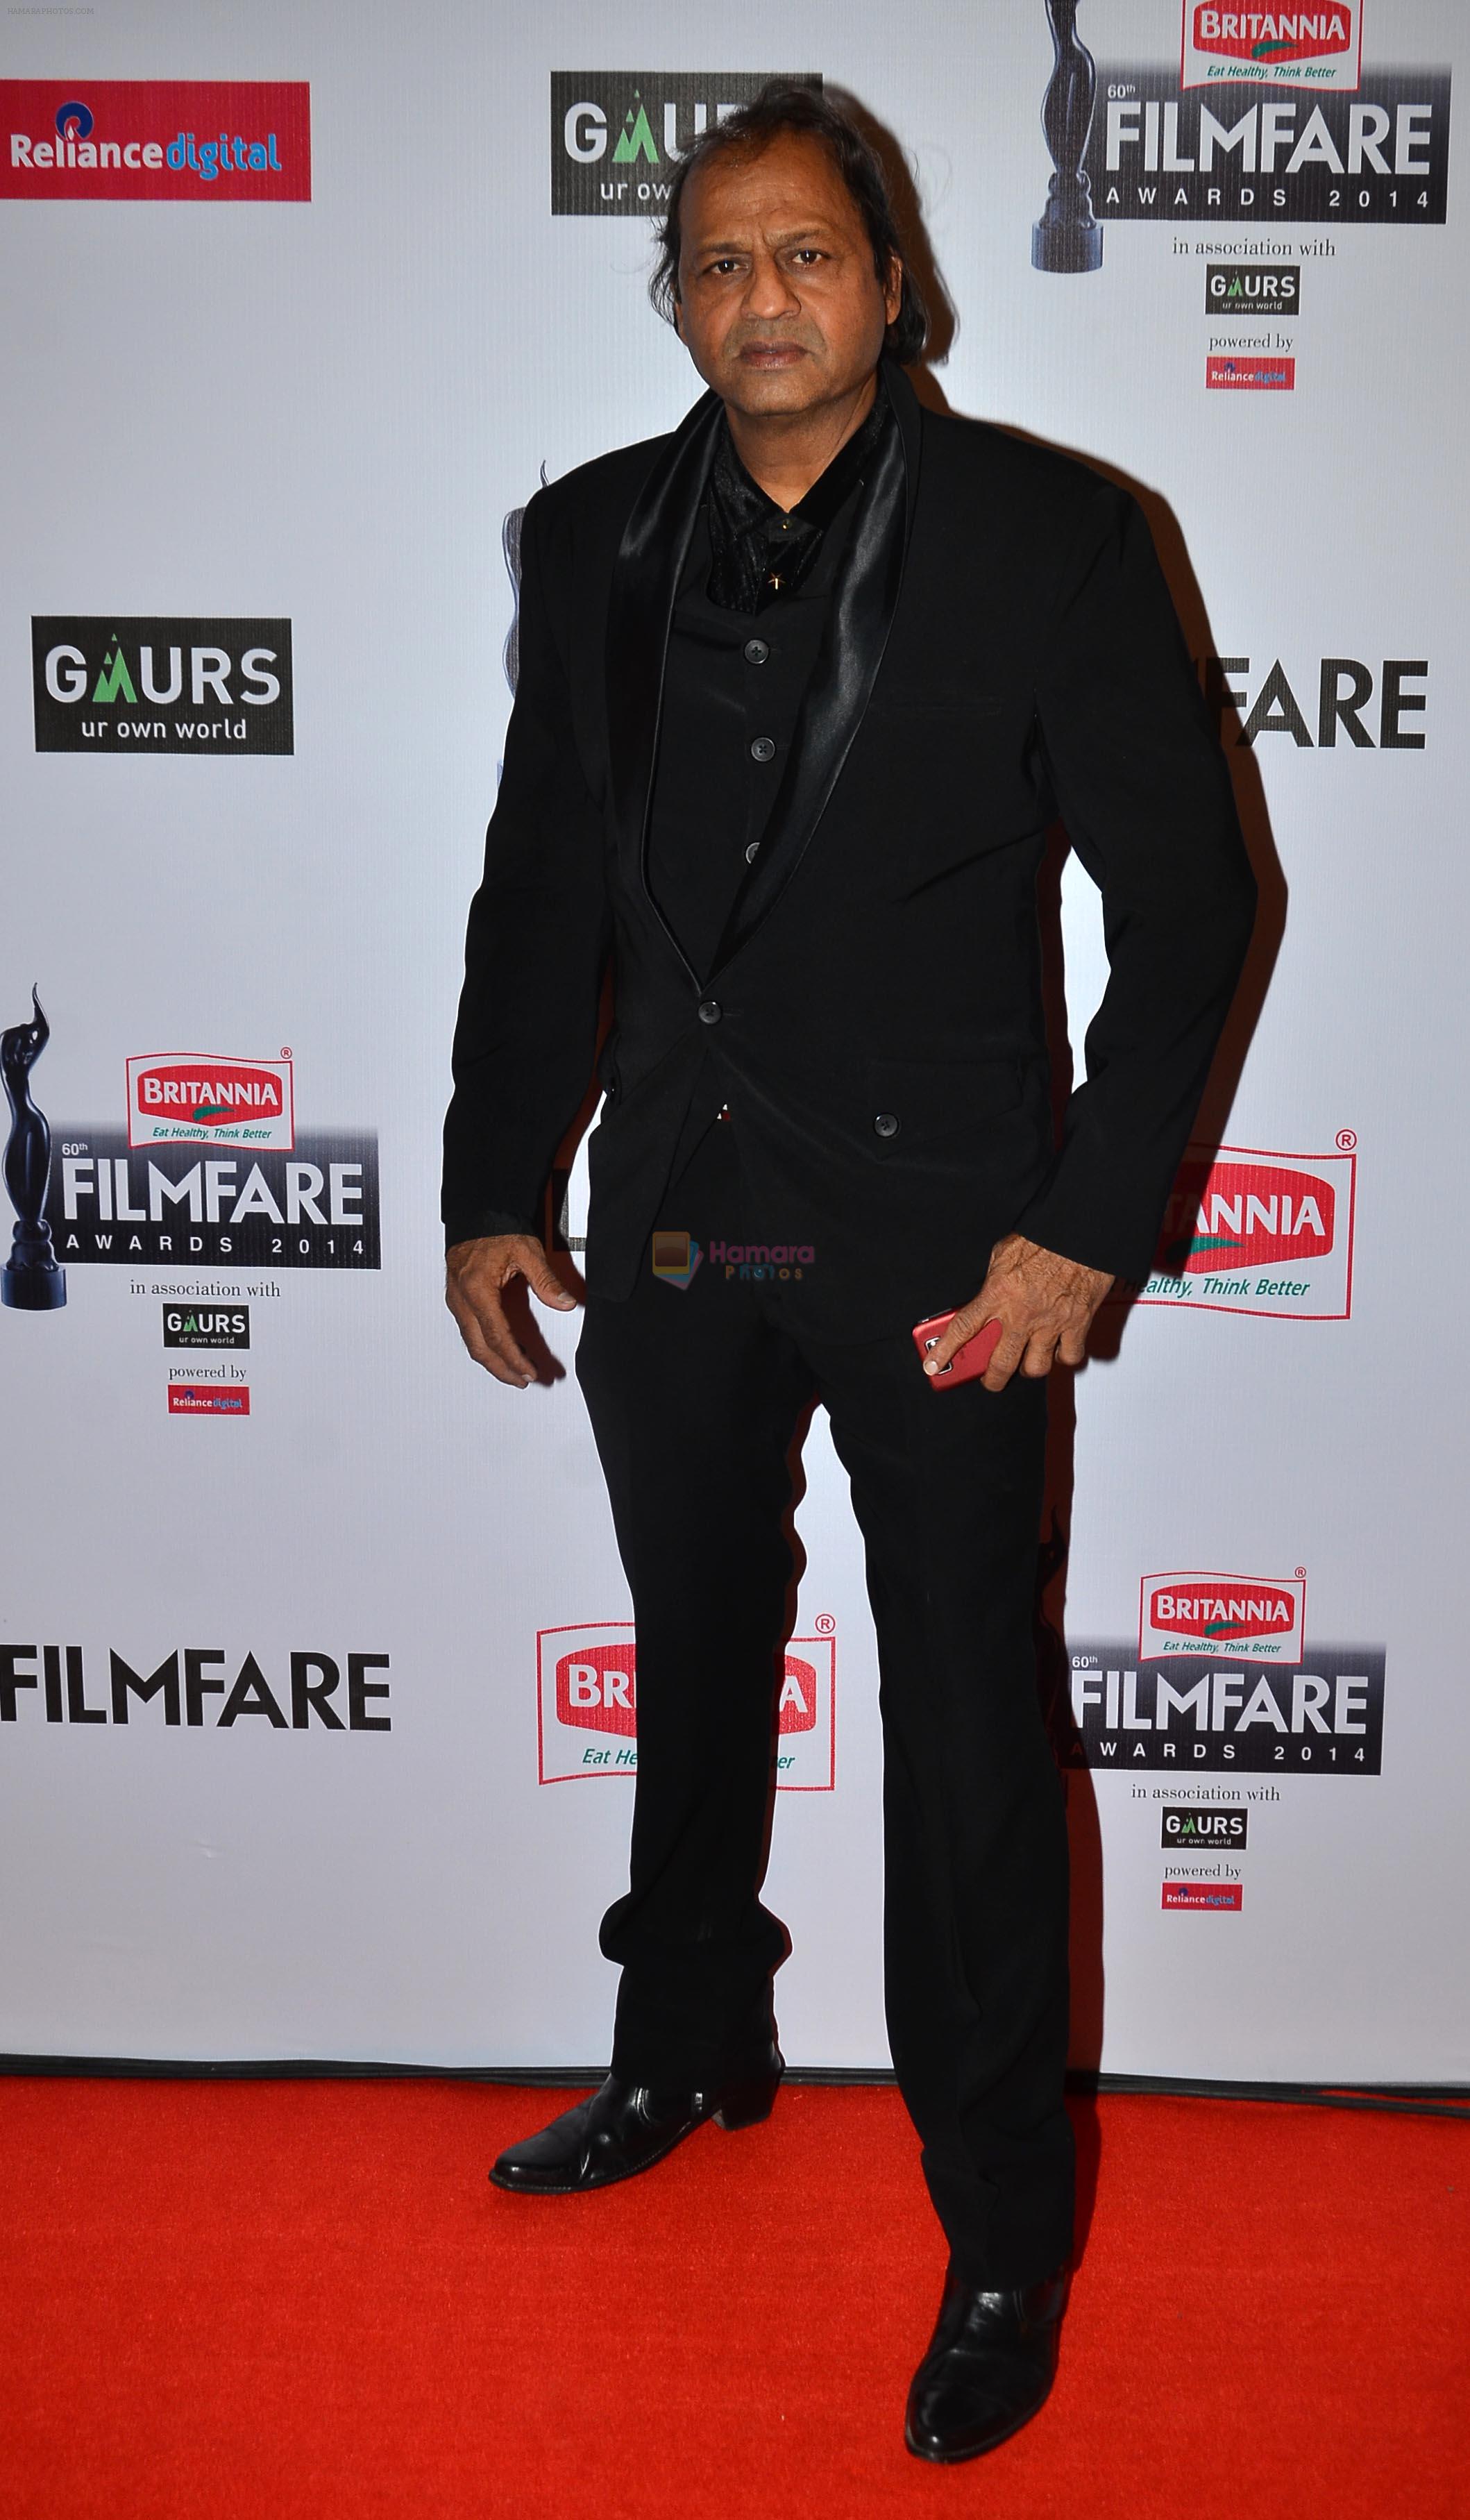 Vasant Bhandari graces the red carpet at the 60th Britannia Filmfare Awards